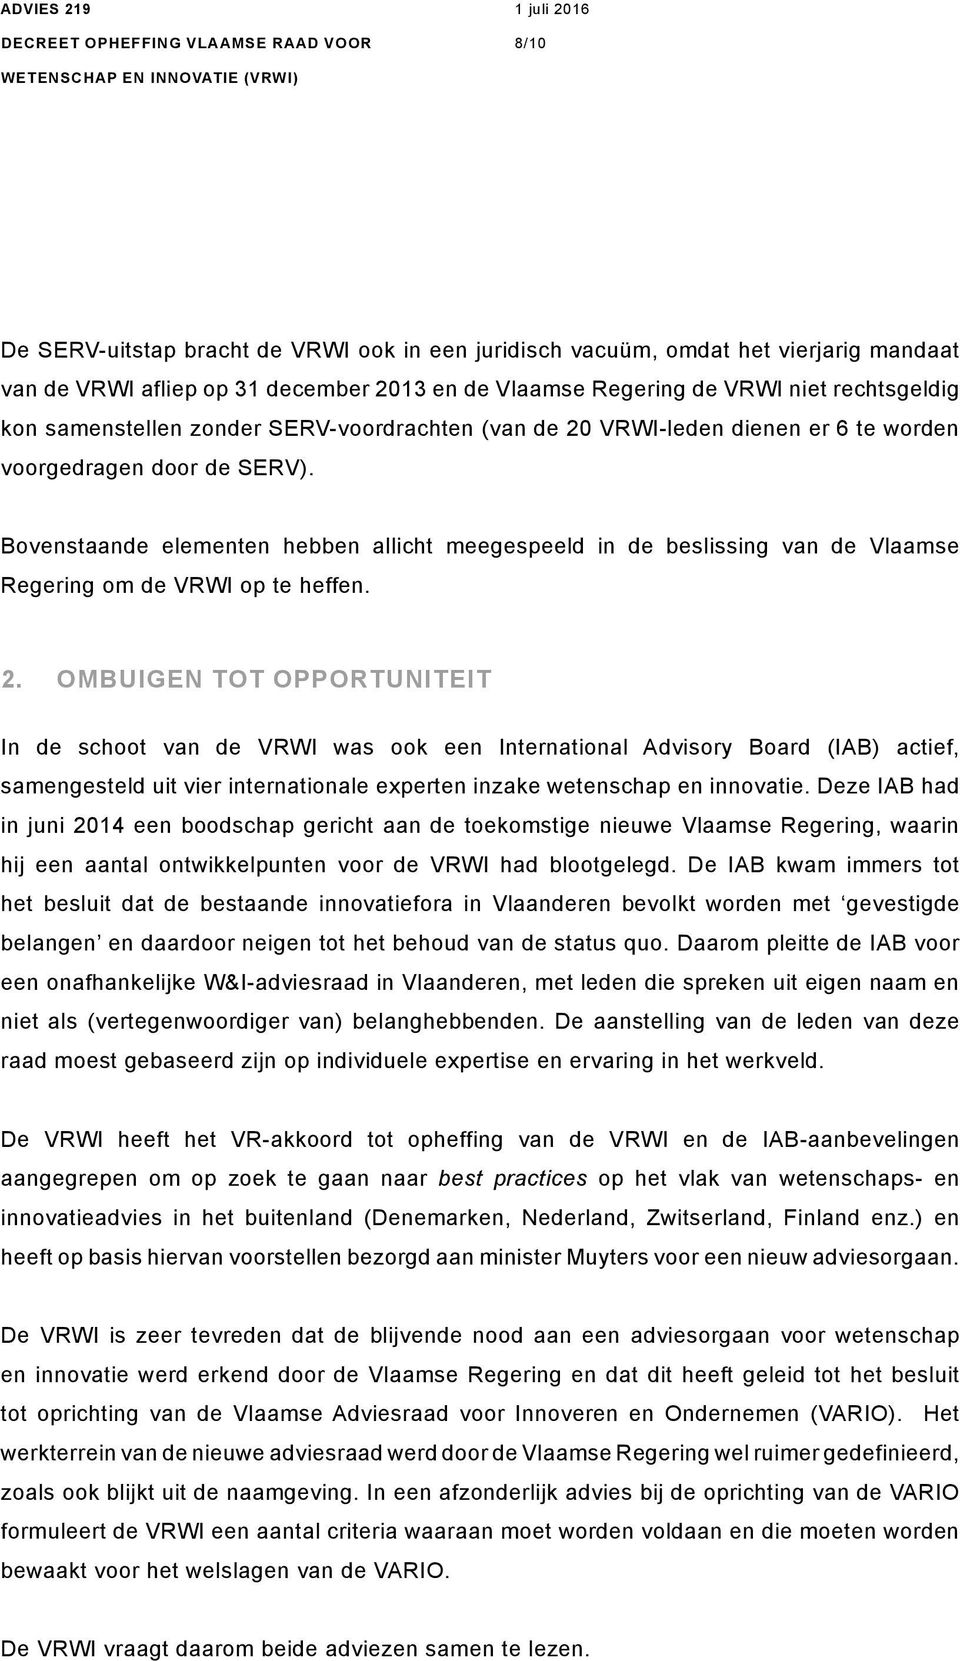 Bovenstaande elementen hebben allicht meegespeeld in de beslissing van de Vlaamse Regering om de VRWI op te heffen. 2.